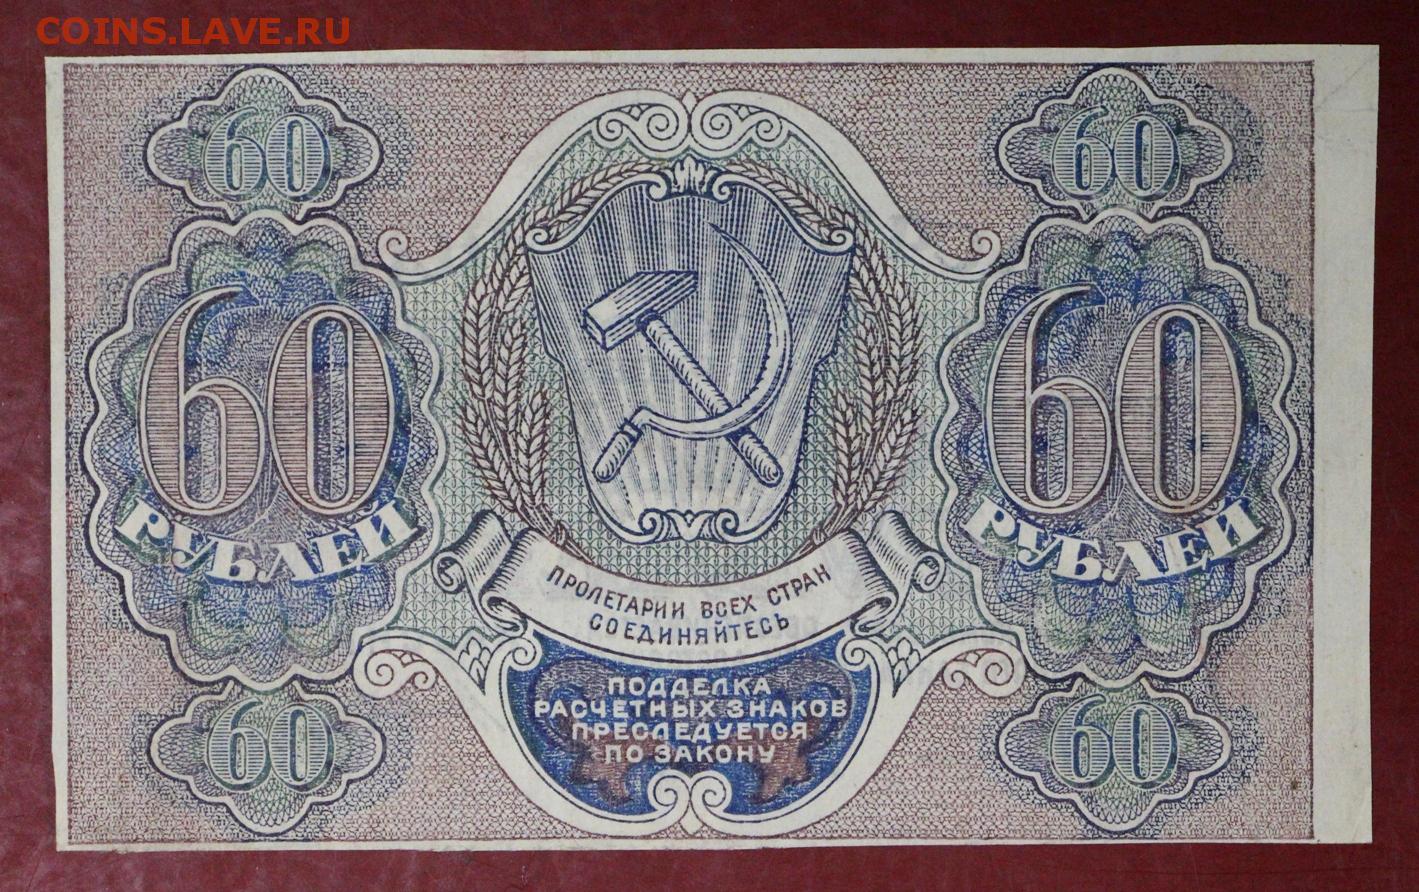 14 60 в рублях. Расчётный знак 60 рублей 1919 года. 60 Рублей фотографий. 60 Рублей 1919 лист. 60 Рублей картинка.